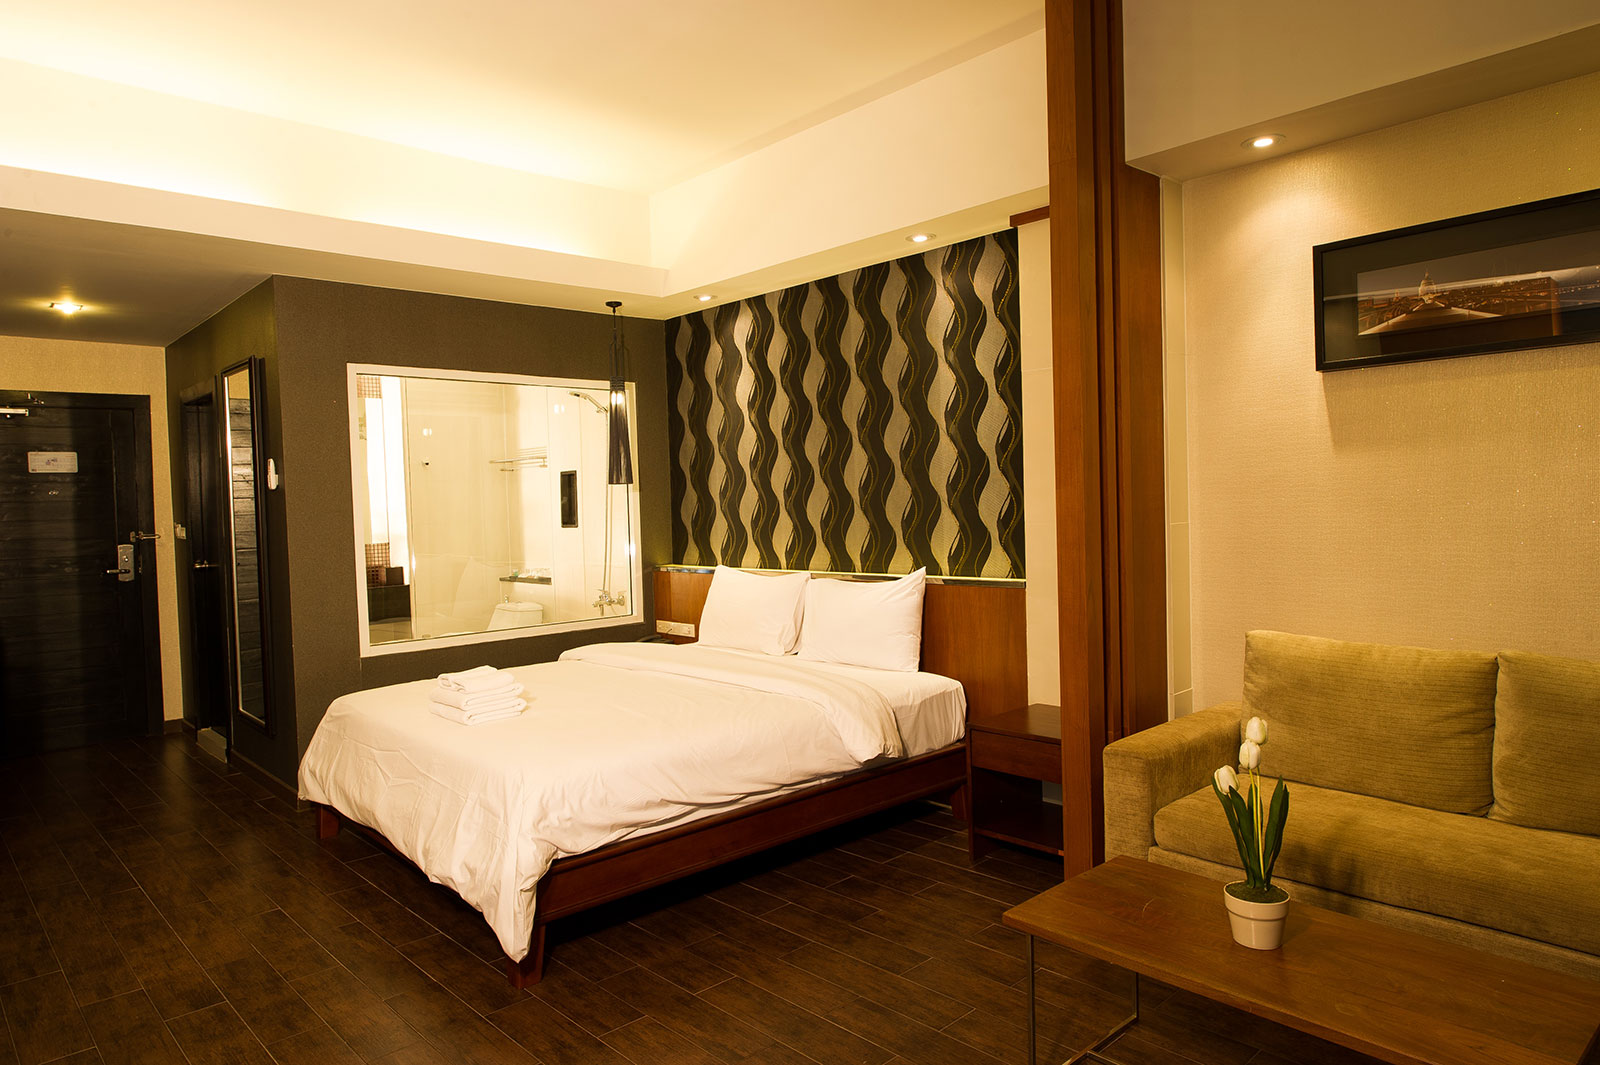 Family Suite Room - Inn Residence Pattaya